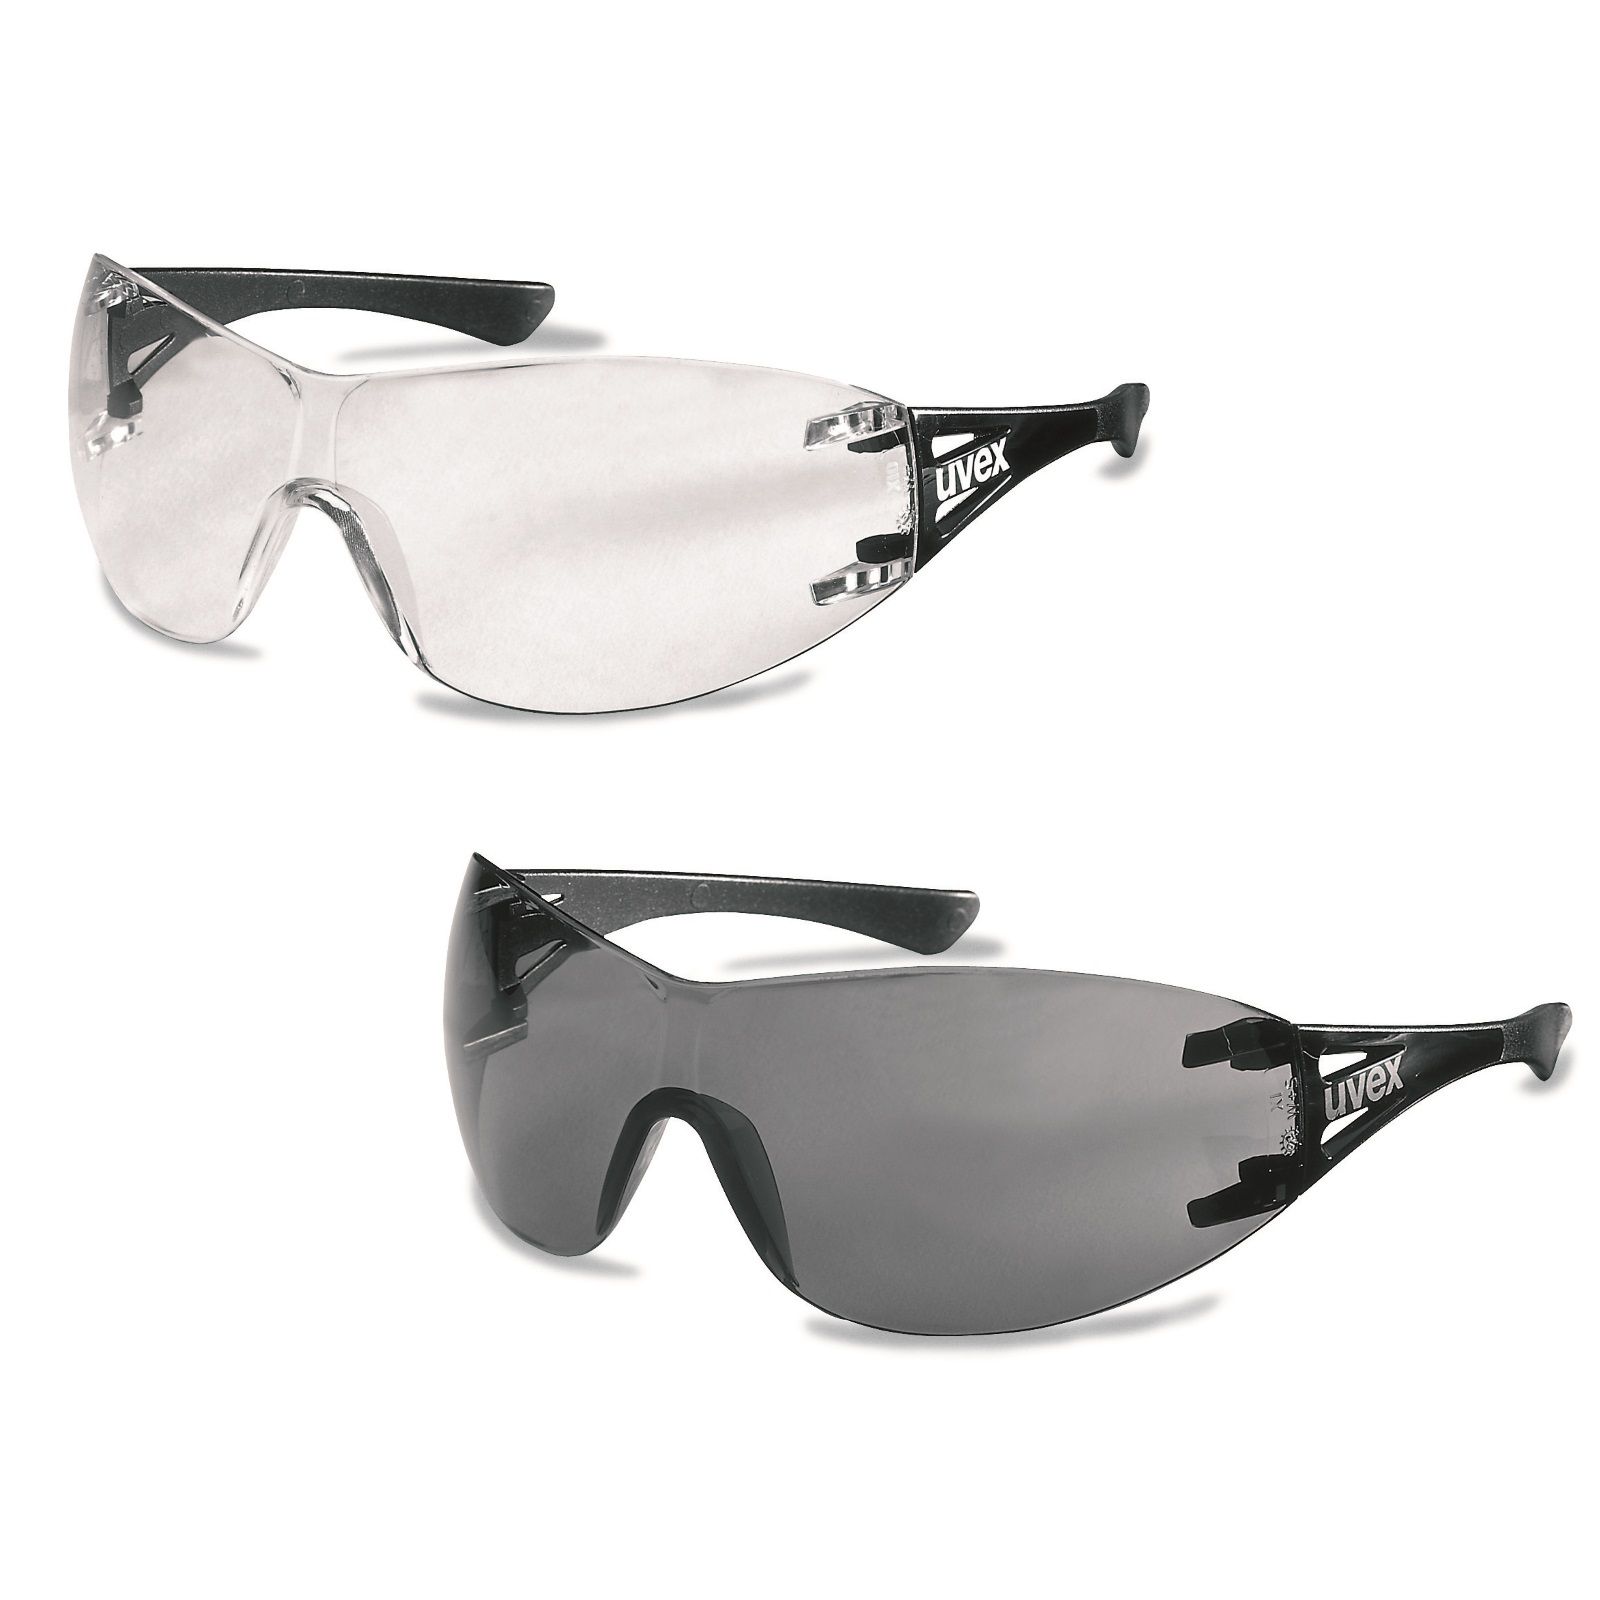 Uvex Arbeitsschutzbrille / Bügelbrille x-trend 9177, Scheibe aus Polycarbonat